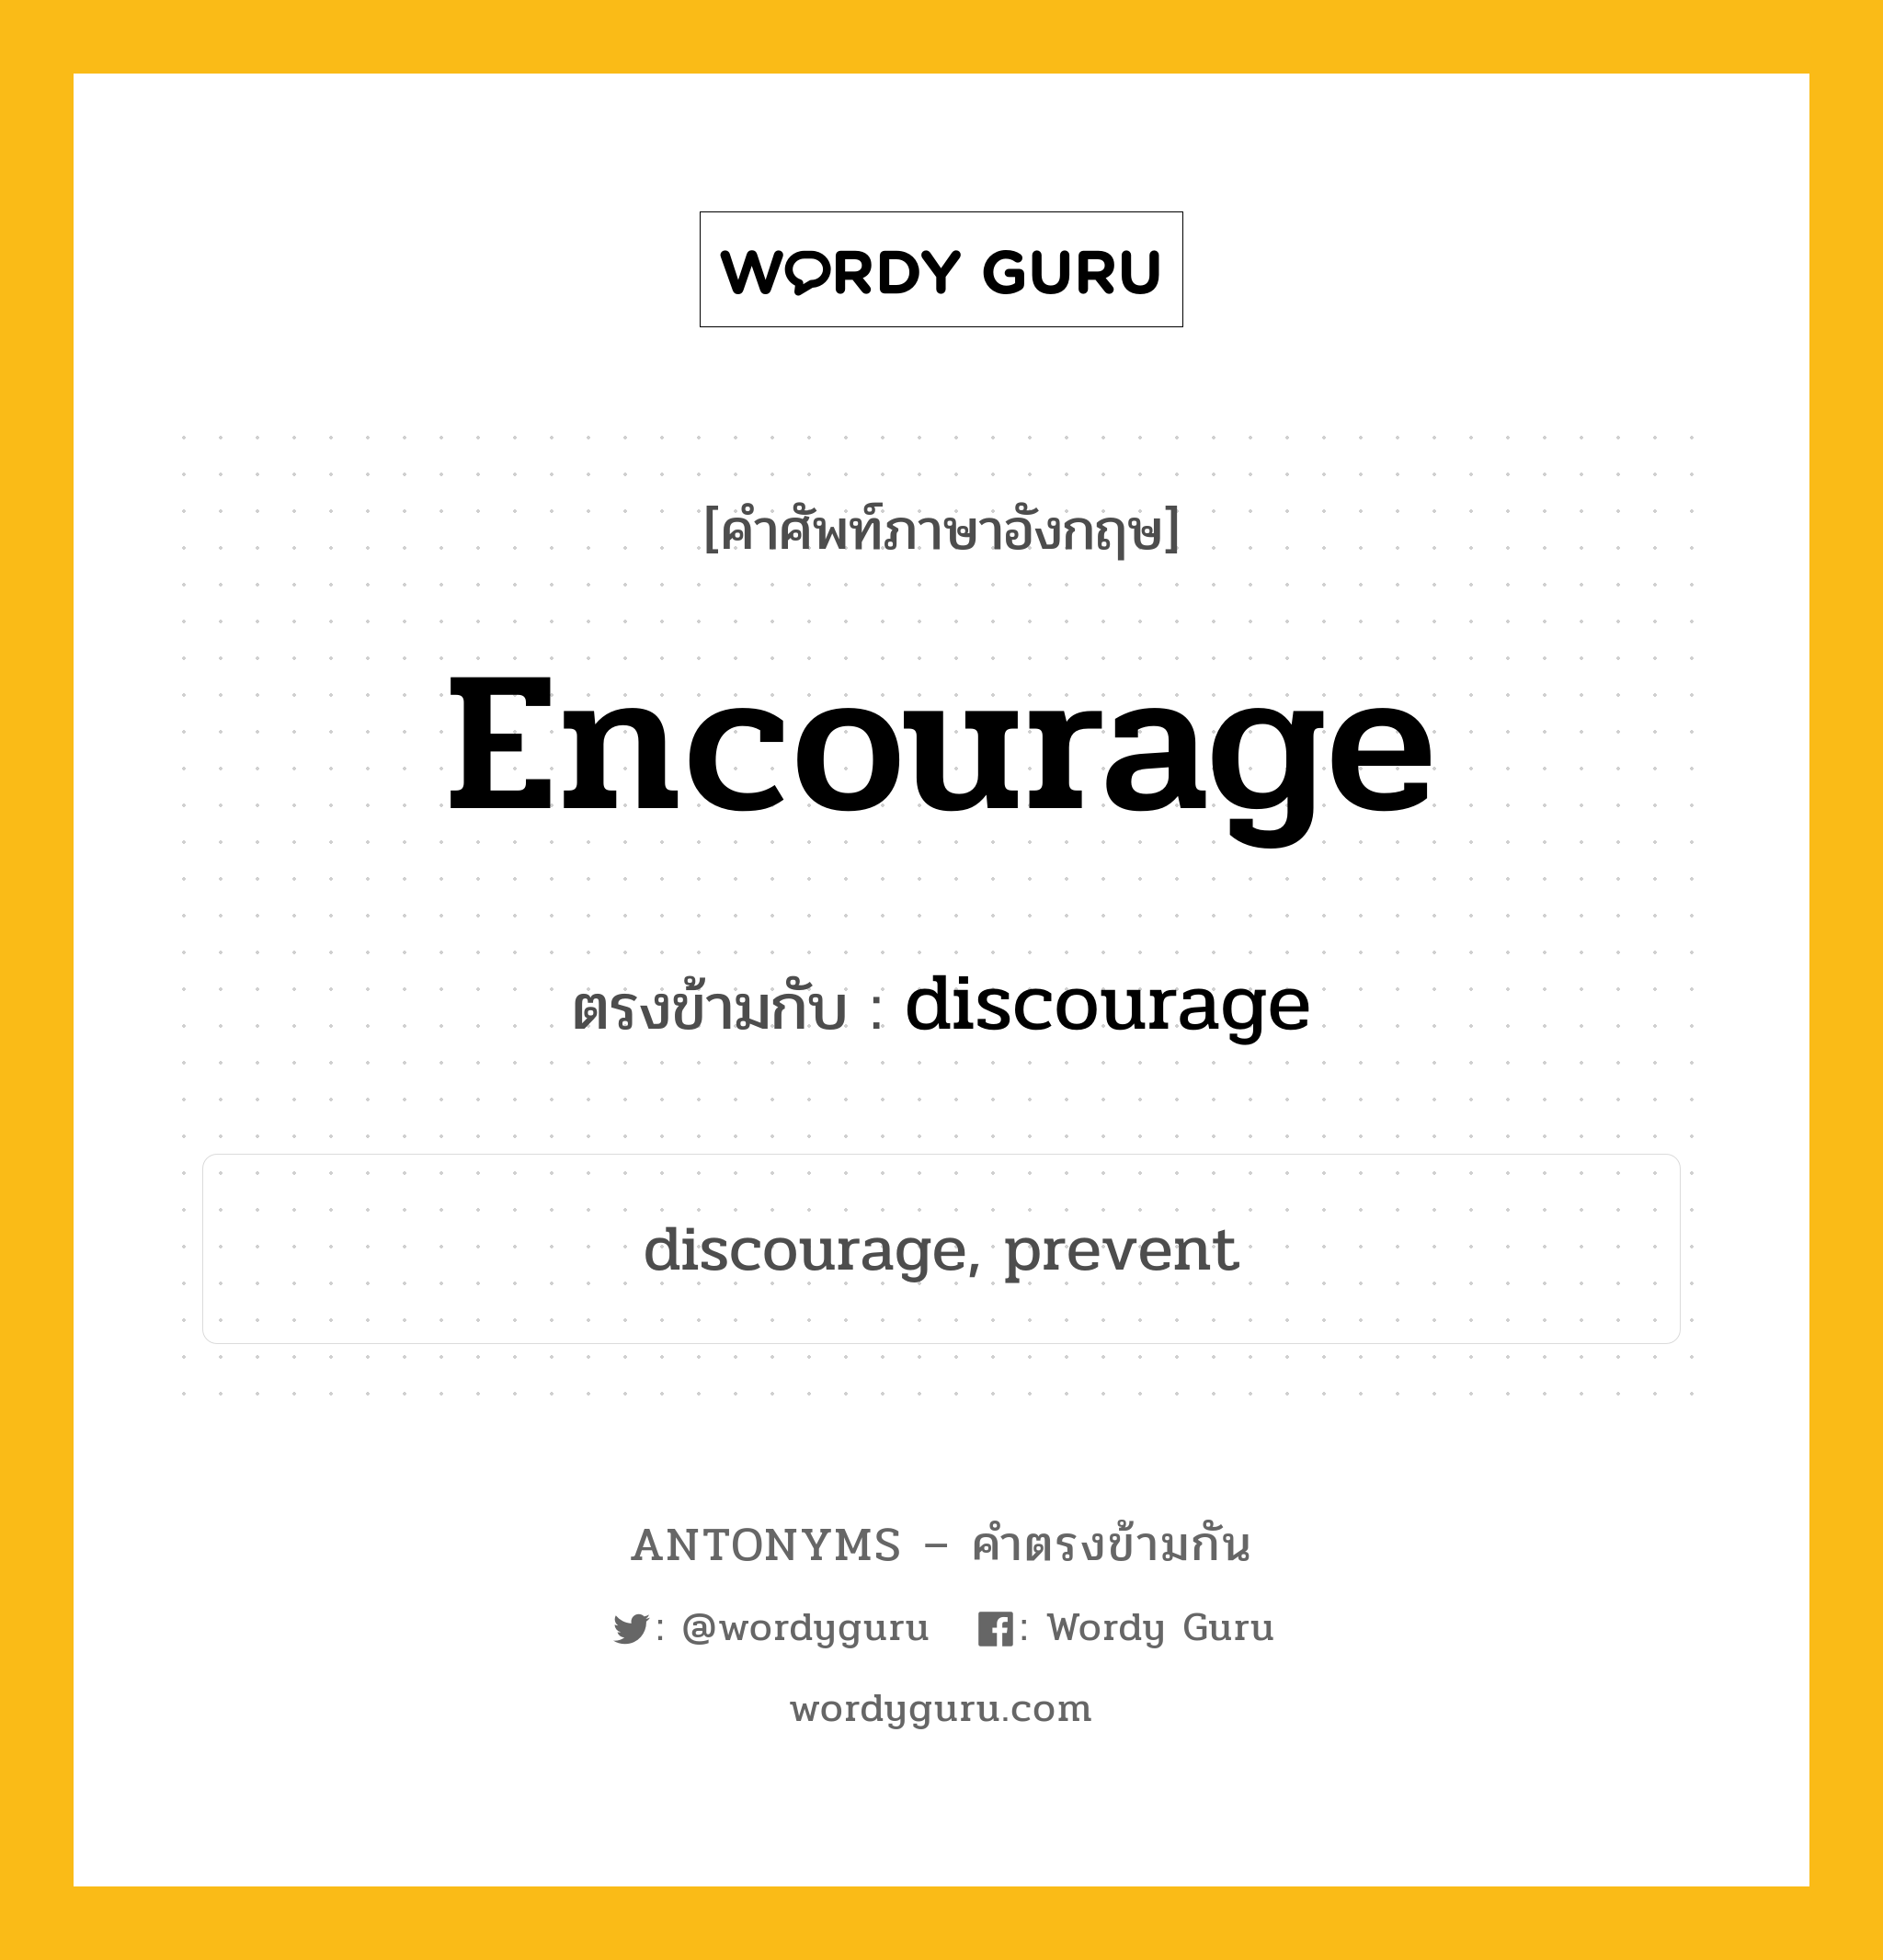 encourage เป็นคำตรงข้ามกับคำไหนบ้าง?, คำศัพท์ภาษาอังกฤษ encourage ตรงข้ามกับ discourage หมวด discourage